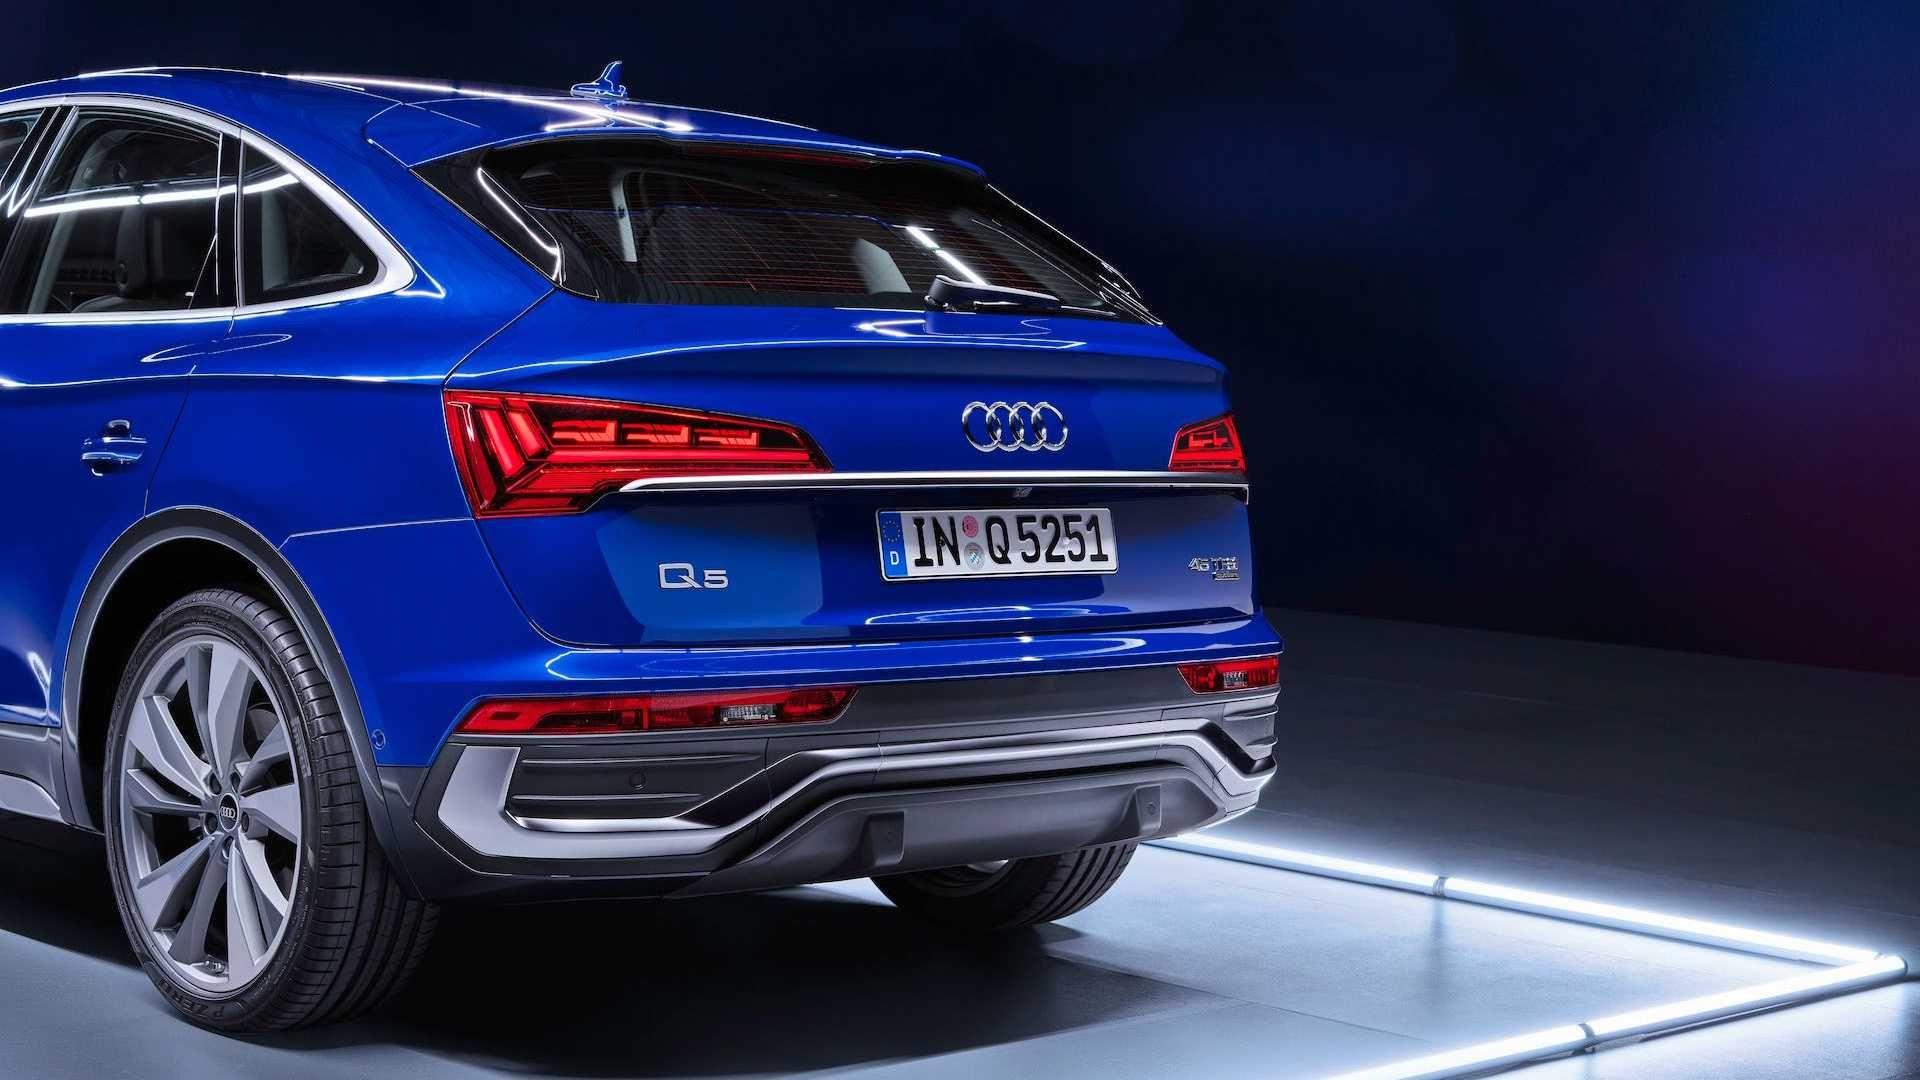 مرجع متخصصين ايران نماي چراغ هاي عقب كراس اور آئودي كيو 5 اسپرت بك / 2021 Audi Q5 Sportback آبي رنگ